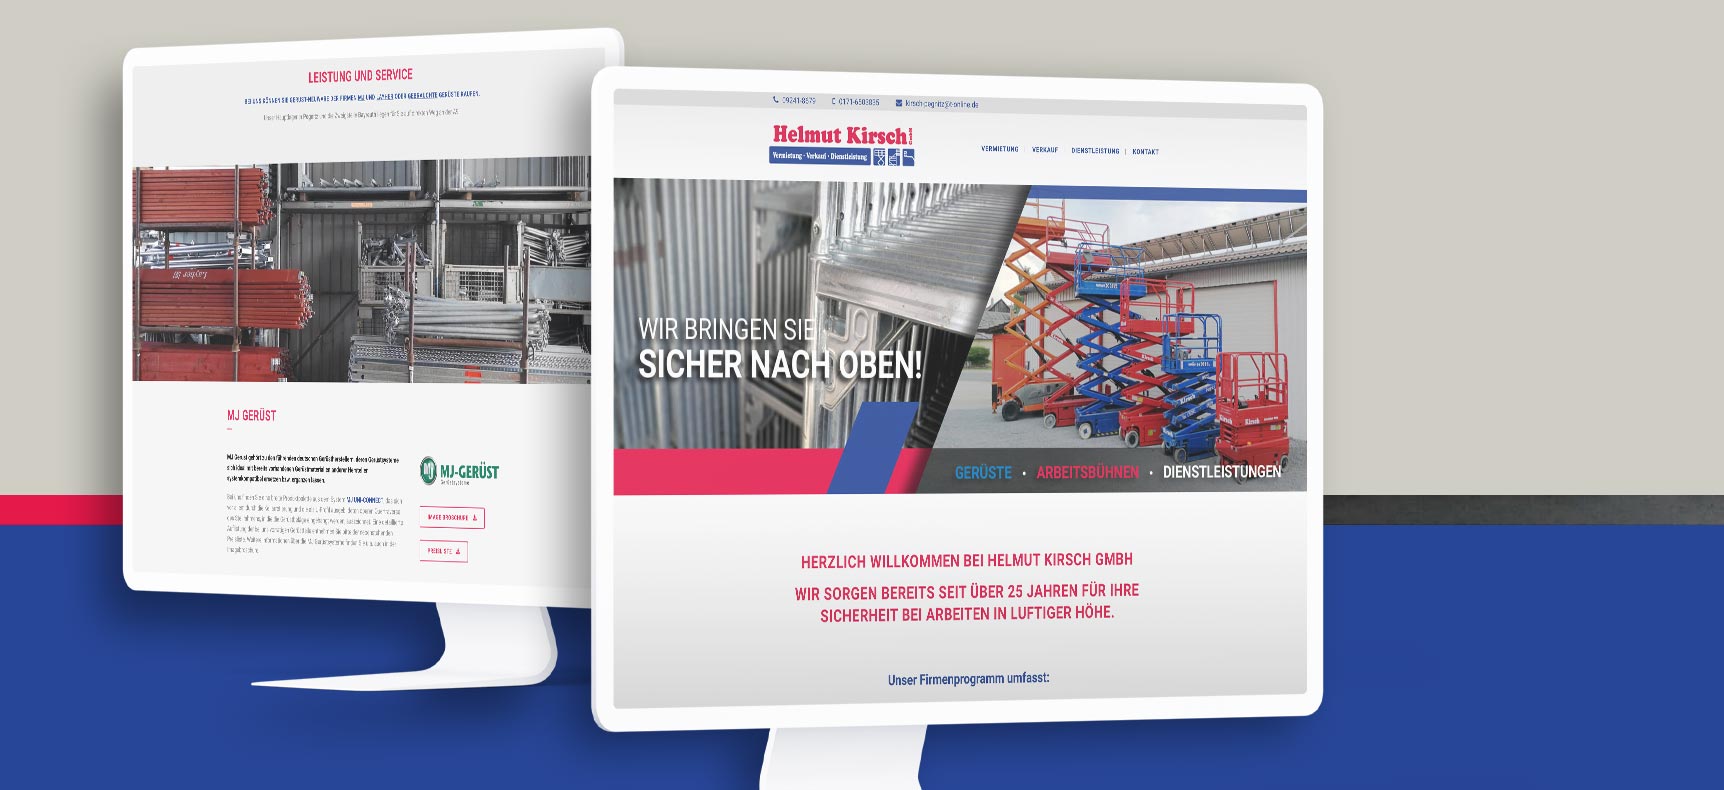 Helmut Kirsch GmbH - Arbeistbühnenverleih | Website erstellt von StatusZwo.com